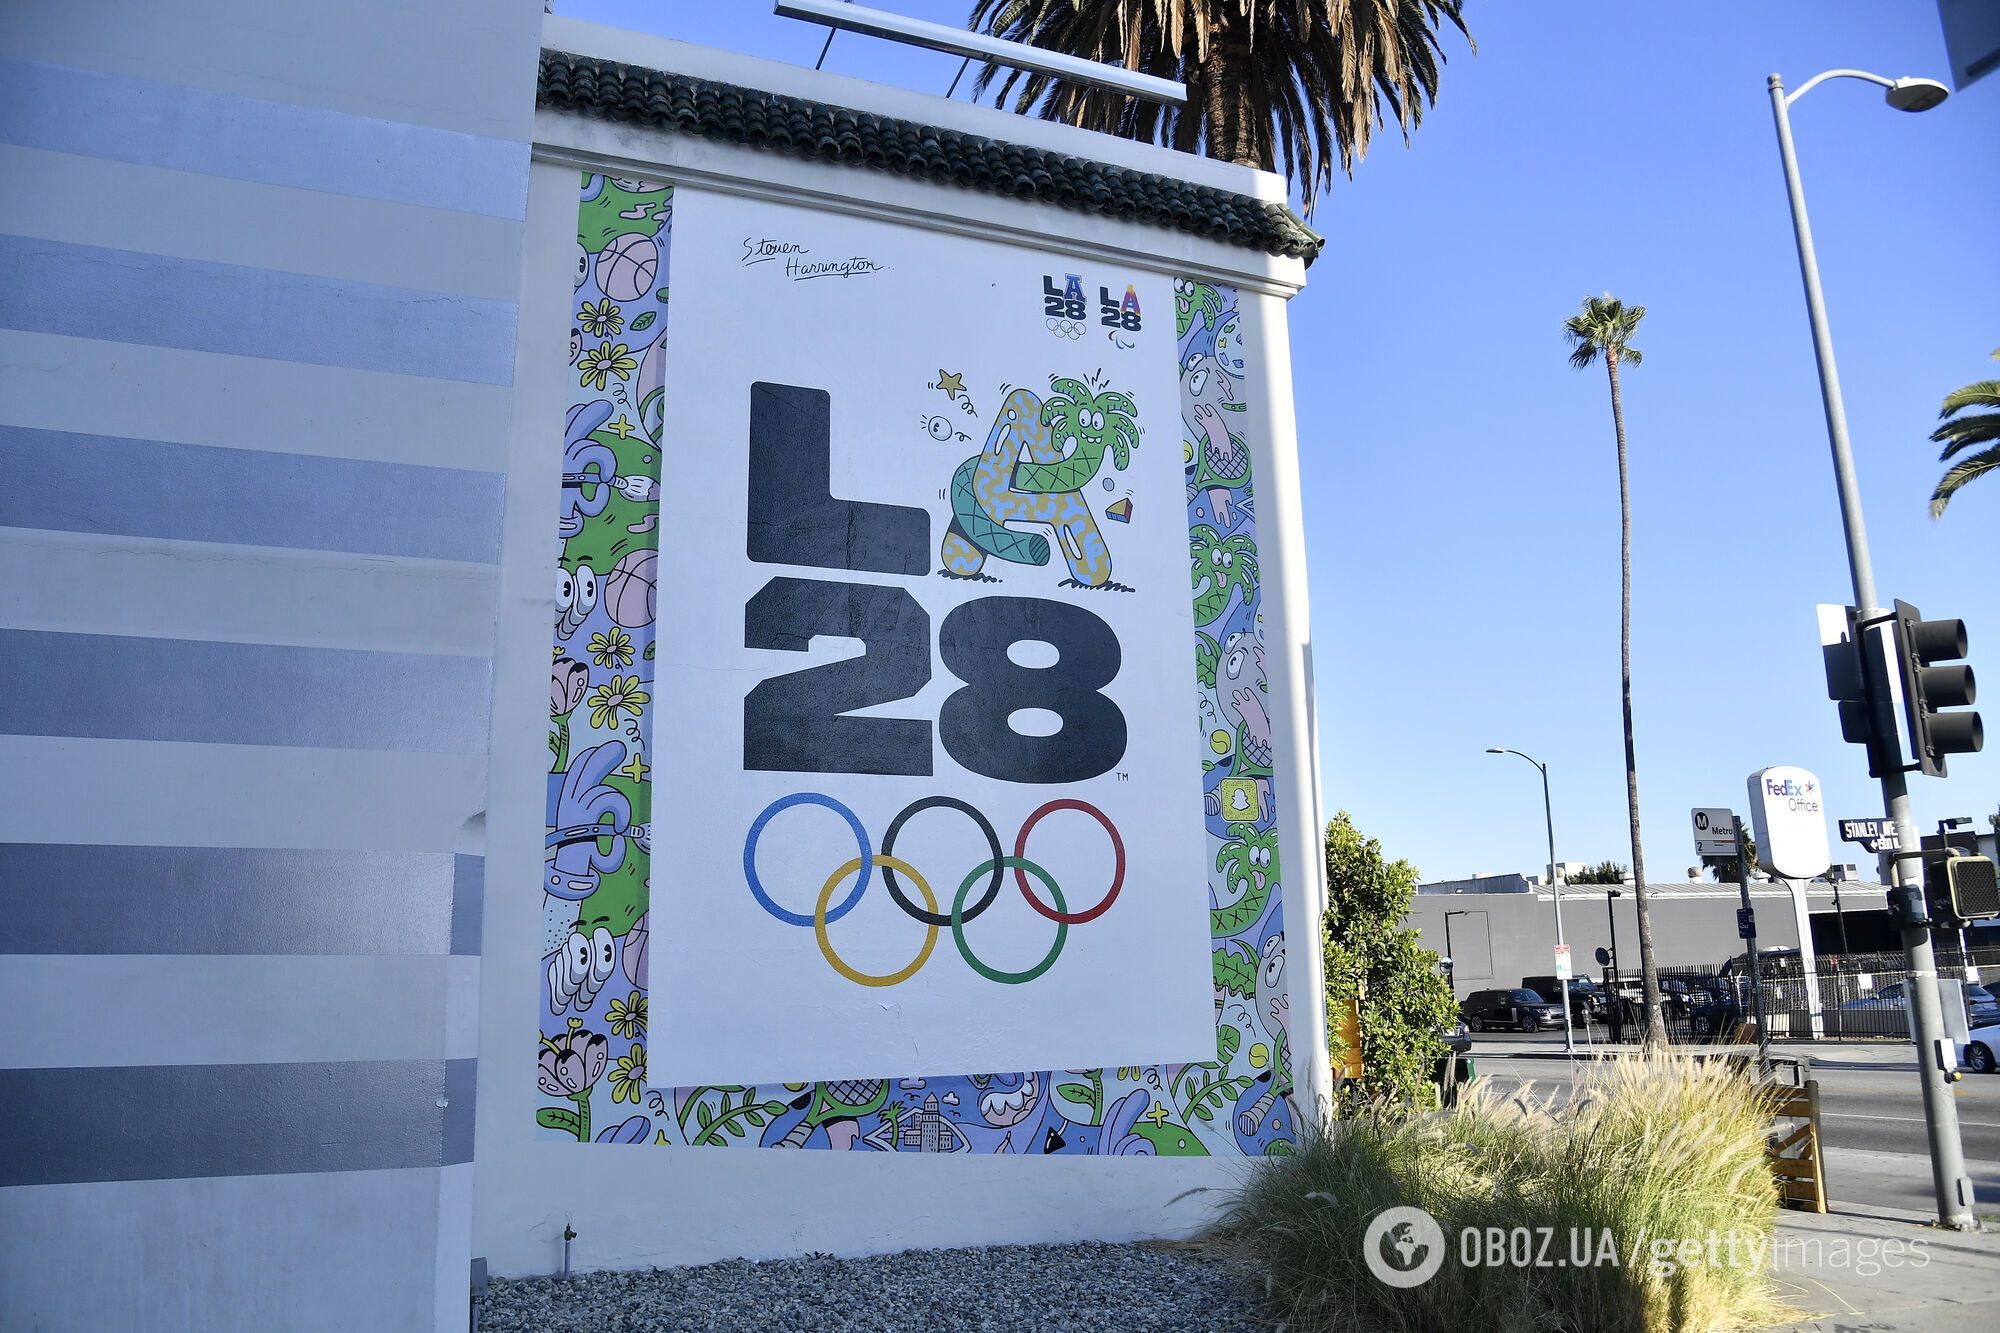 Олімпіада-2028 відбудеться в Лос-Анджелесі.